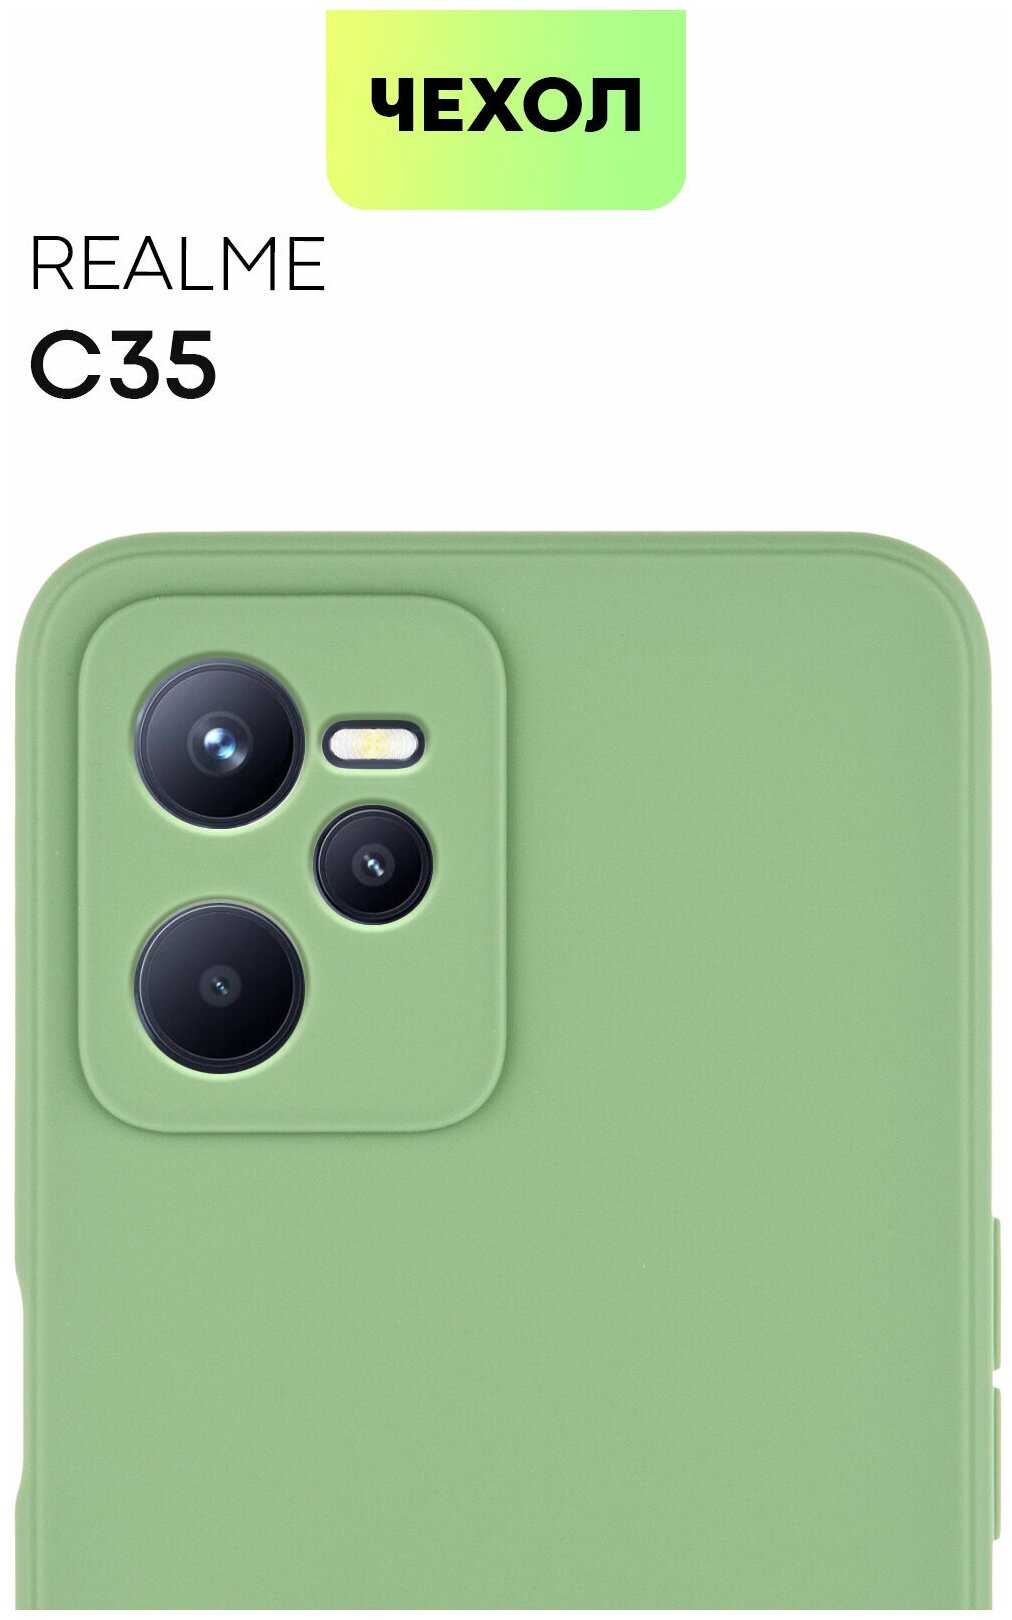 Чехол BROSCORP для Realme C35 (Реалми Ц35), тонкий чехол, матовое покрытие, бортик (защита) вокруг модуля камер, зеленый